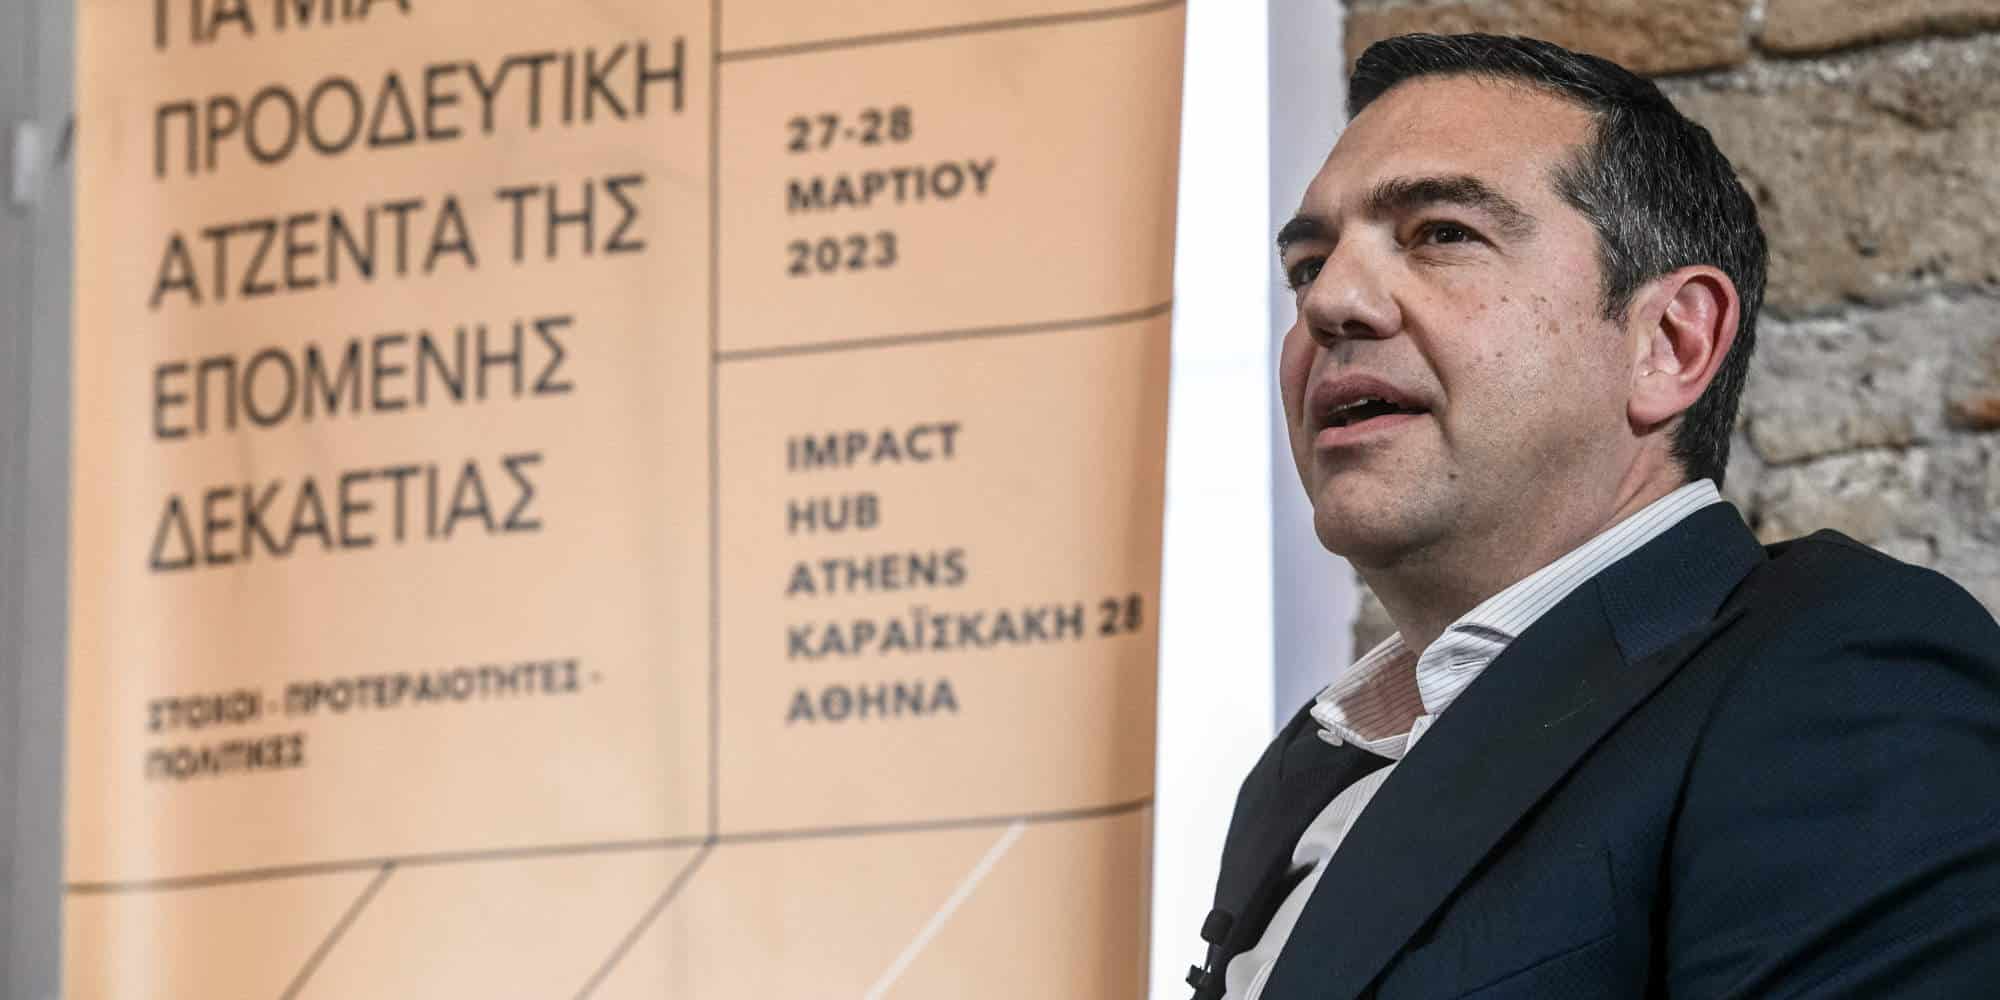 Ο πρόεδρος του ΣΥΡΙΖΑ, Αλέξης Τσίπρας σε συνέδριο για την «ατζέντα της επόμενης δεκαετίας» / Φωτογραφία: Eurokinissi